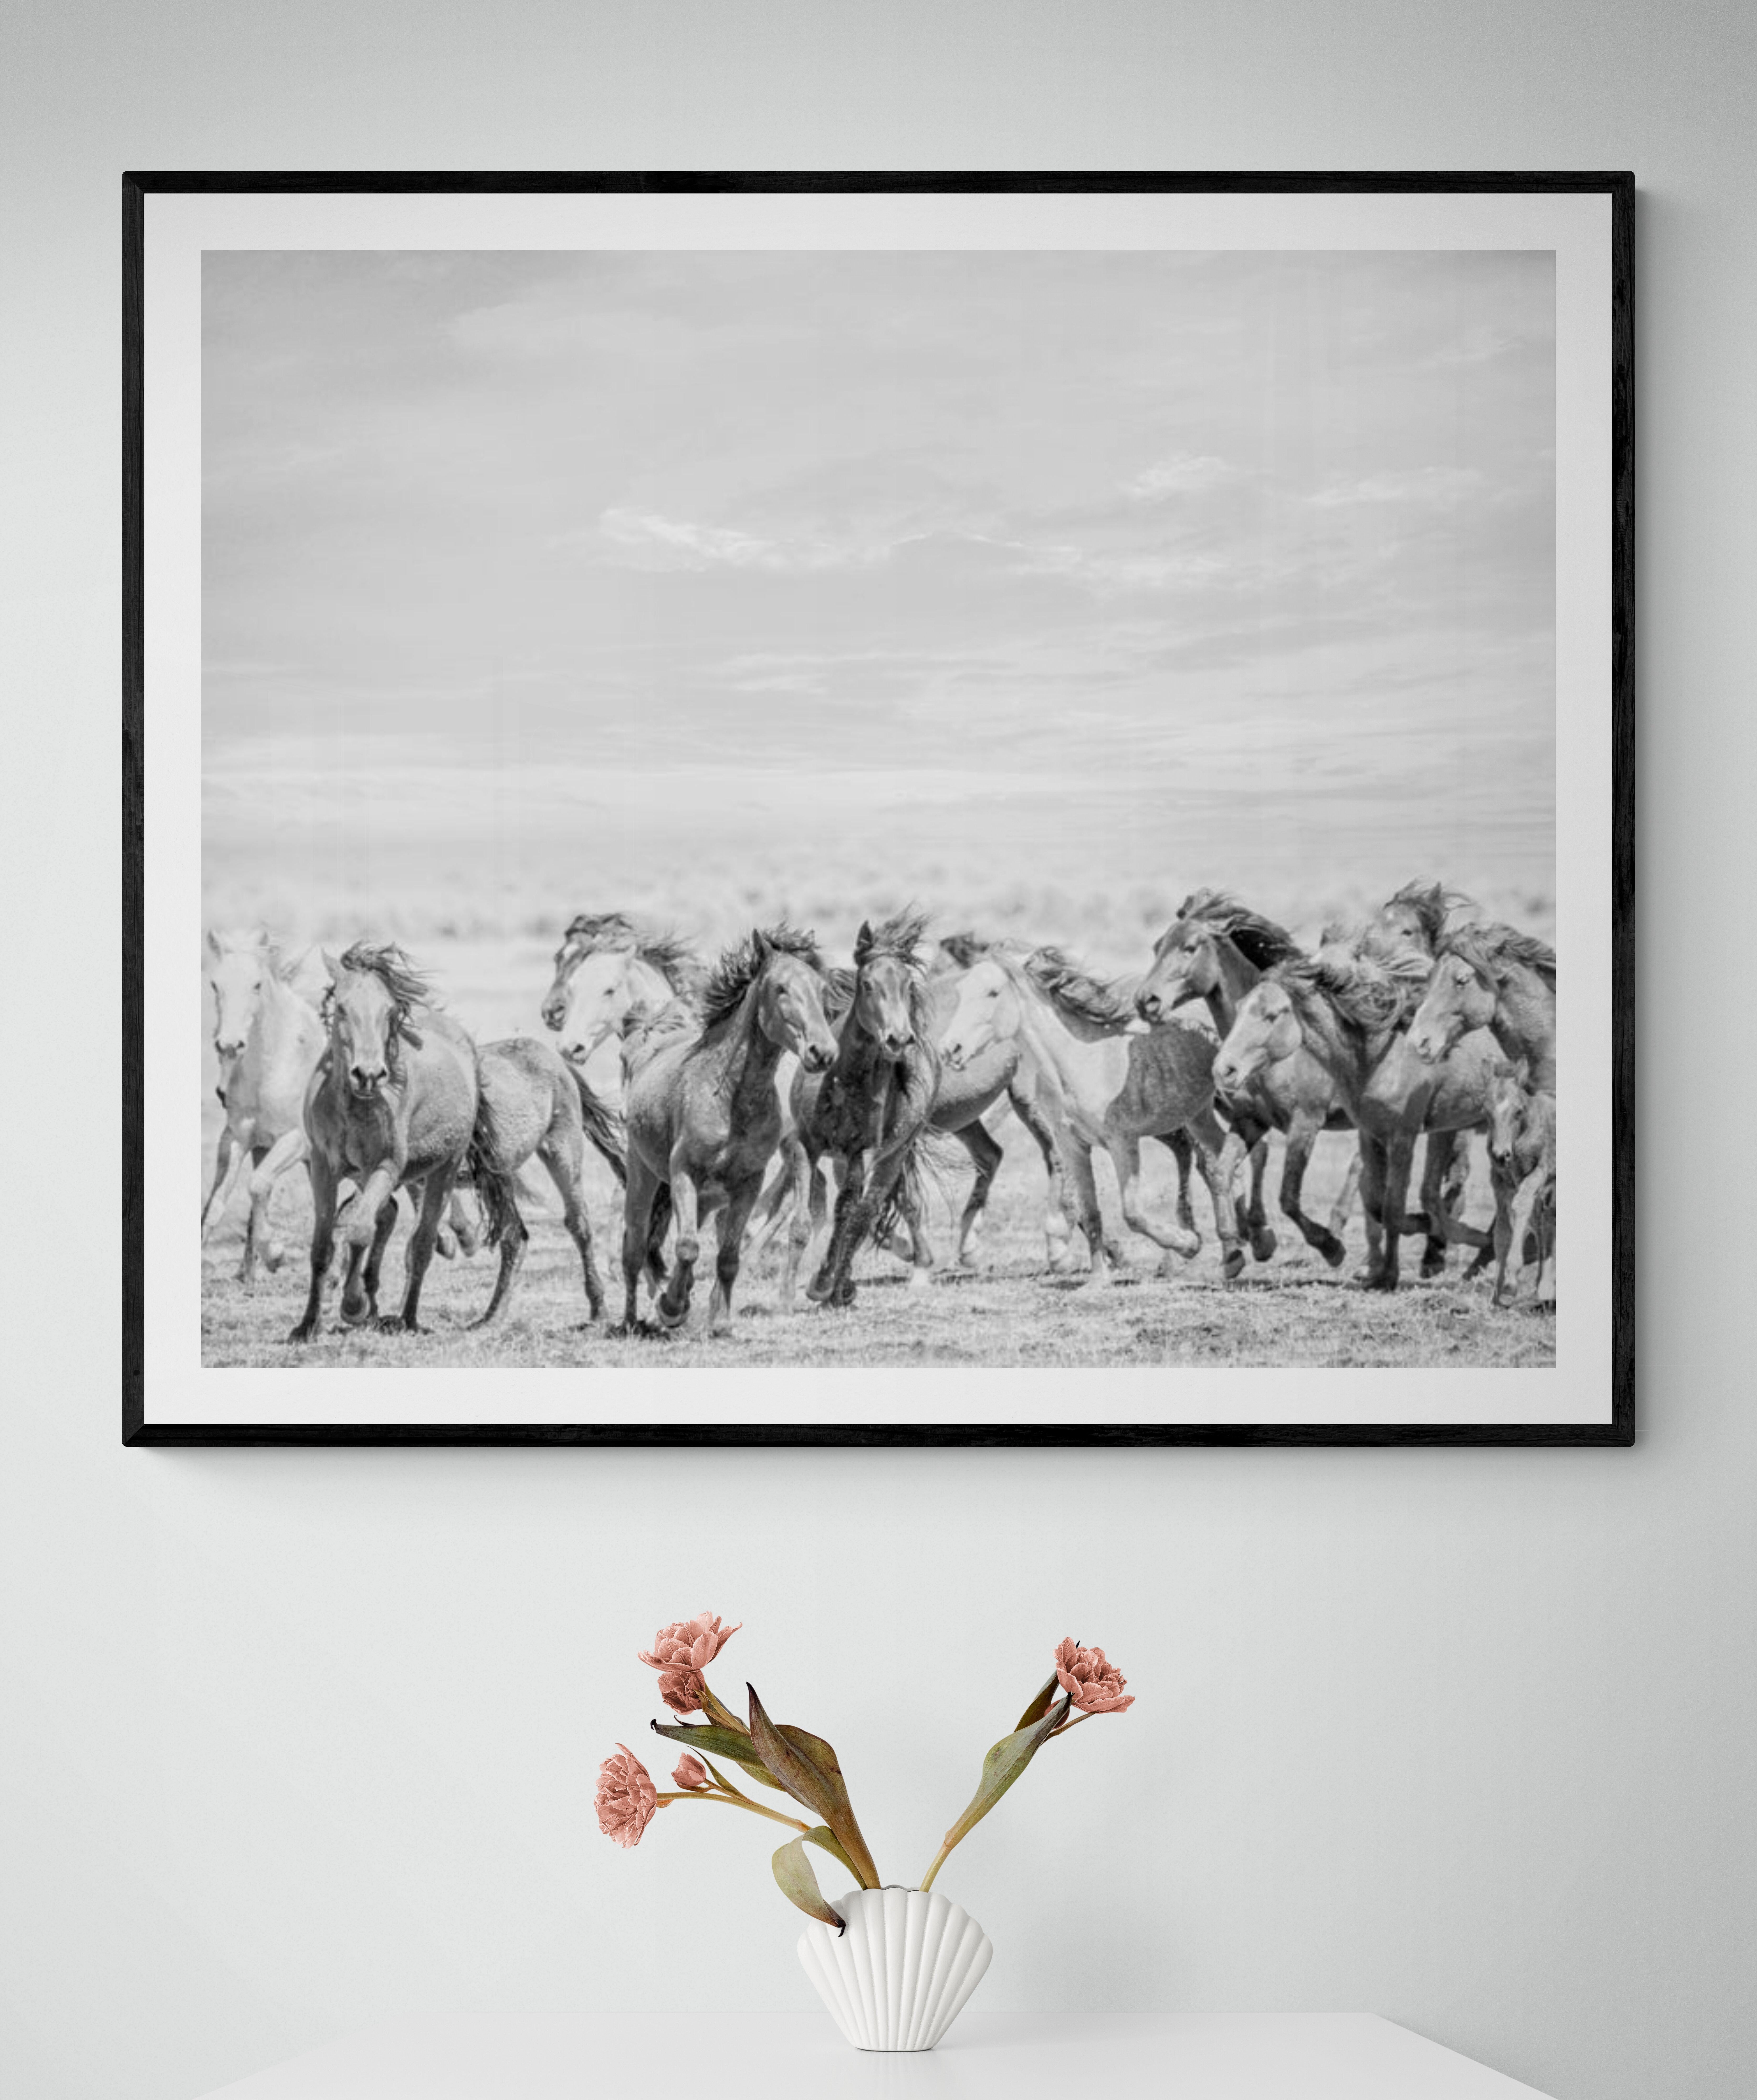 Il s'agit d'une photographie contemporaine en noir et blanc de chevaux sauvages. 
